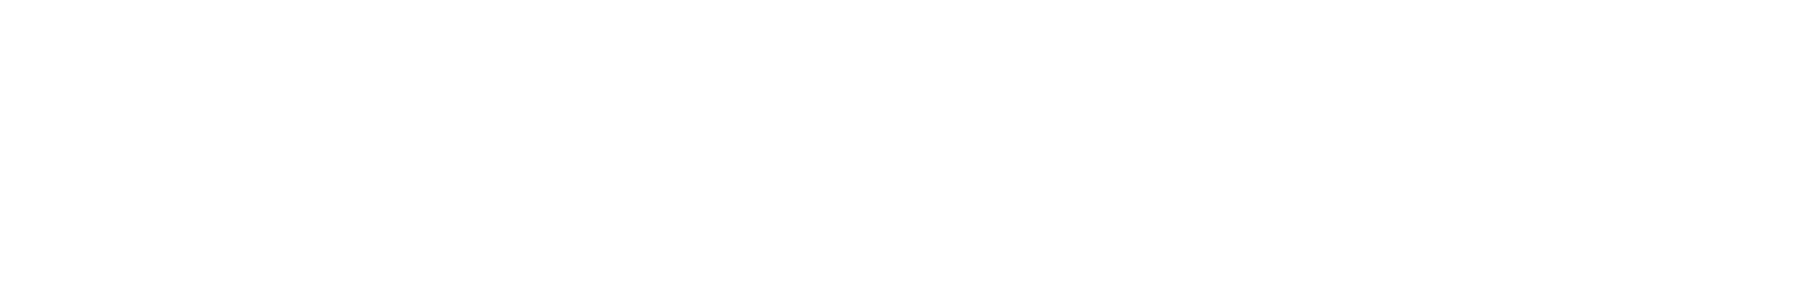 「阿久悠トリビュート・スペシャルソングス ～朝日のように～」2017.11.15 ON SALE